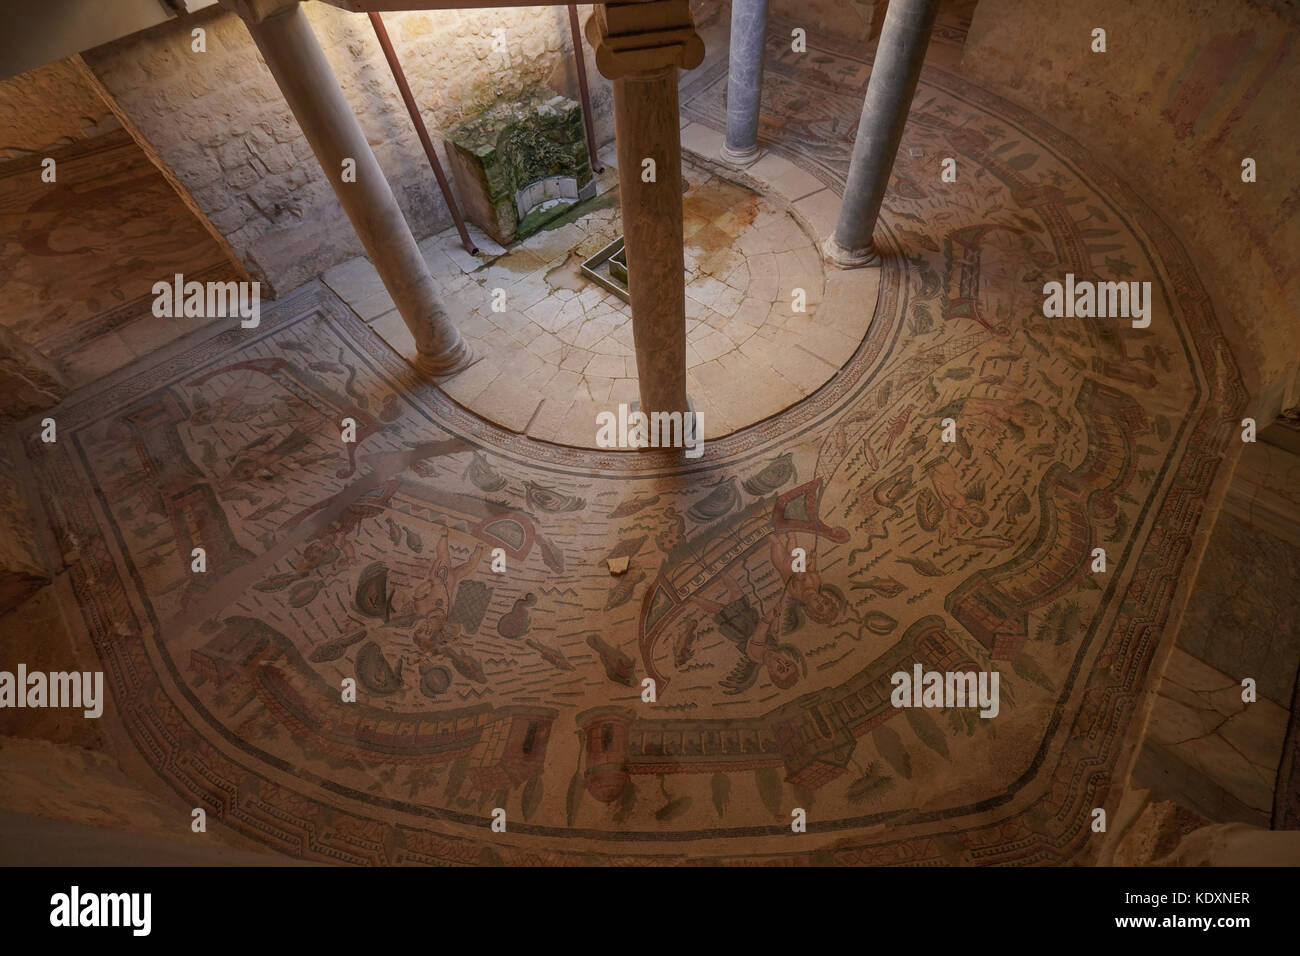 Una vista di mosaici romani da una collezione considerate essere le migliori nel mondo a piazza armerina. da una serie di foto di viaggio in Sicilia, Italia Foto Stock